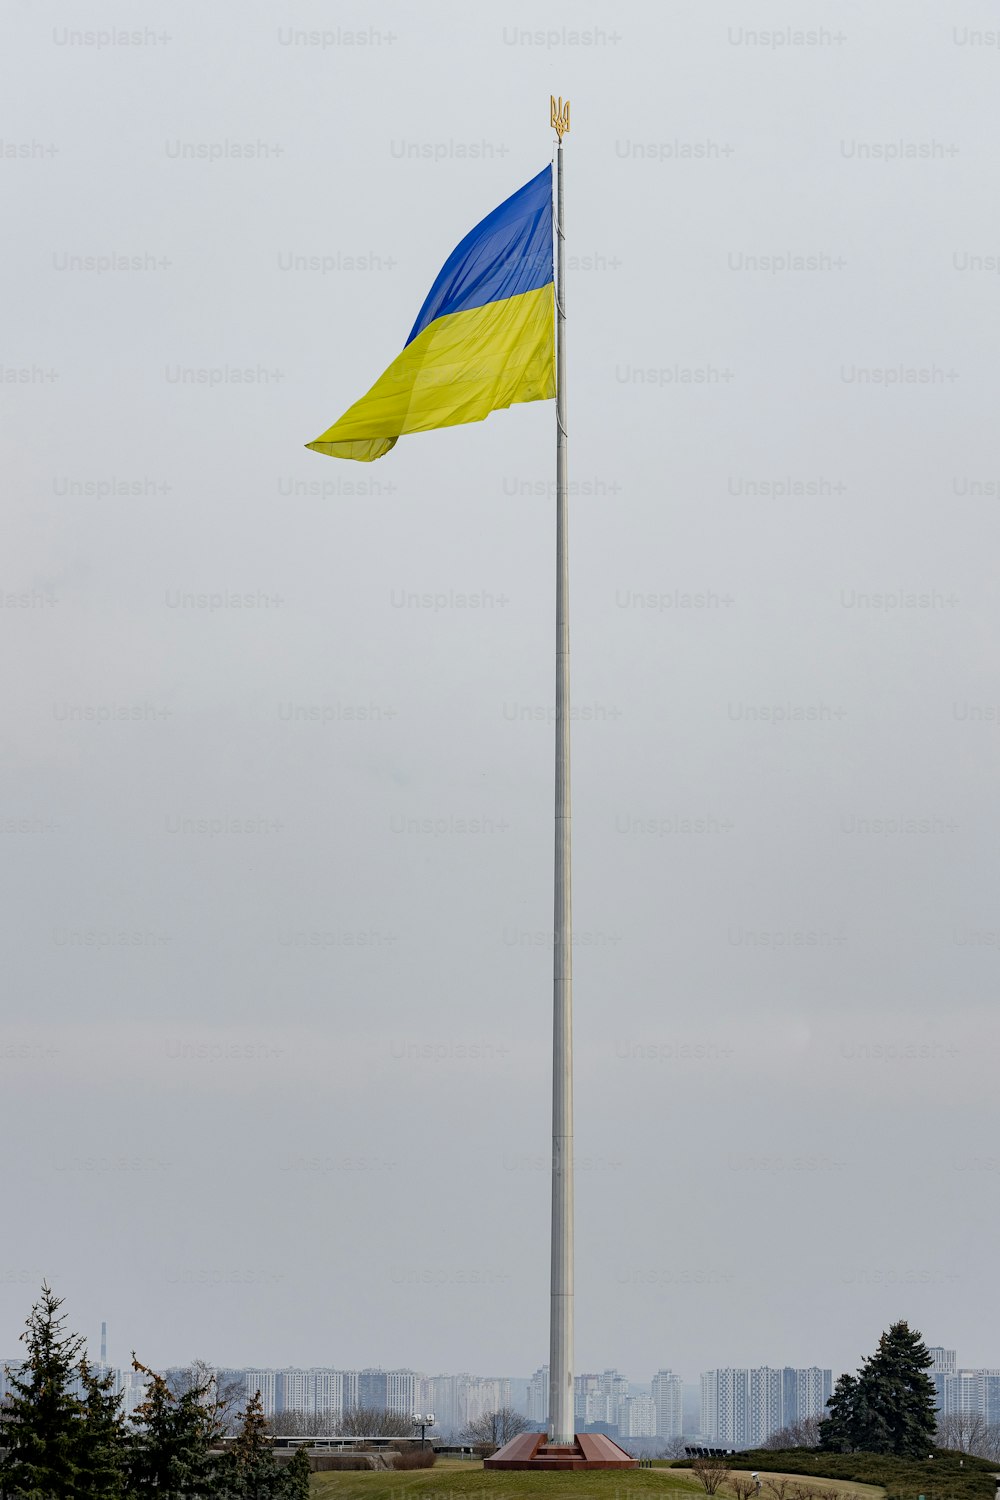 背の高いポールの上にある青と黄色の旗